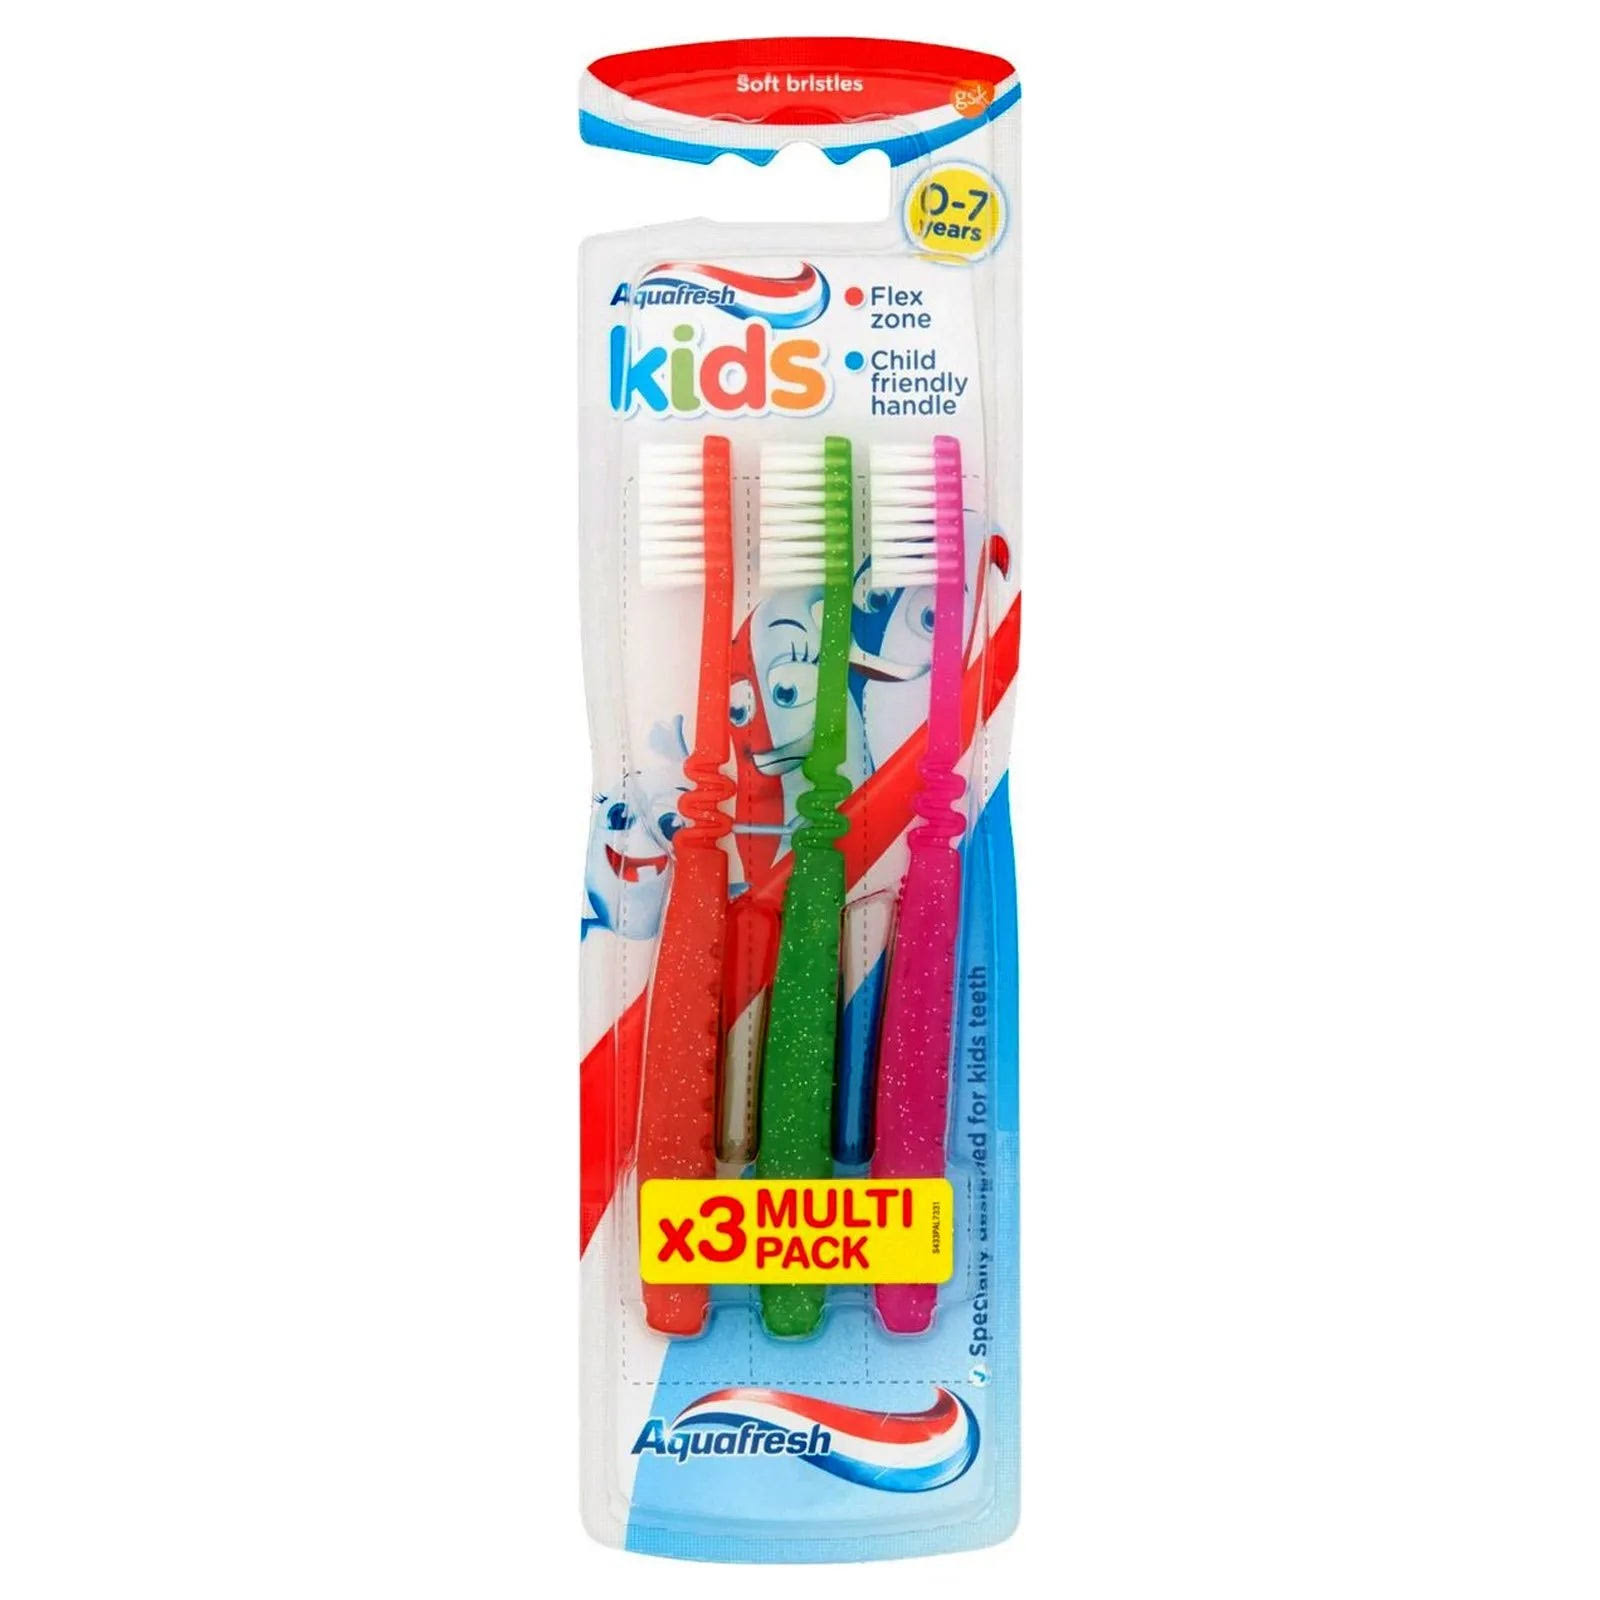 Aquafresh Kids Toothbrush 0-7 Years Soft Bristles 3 Pack